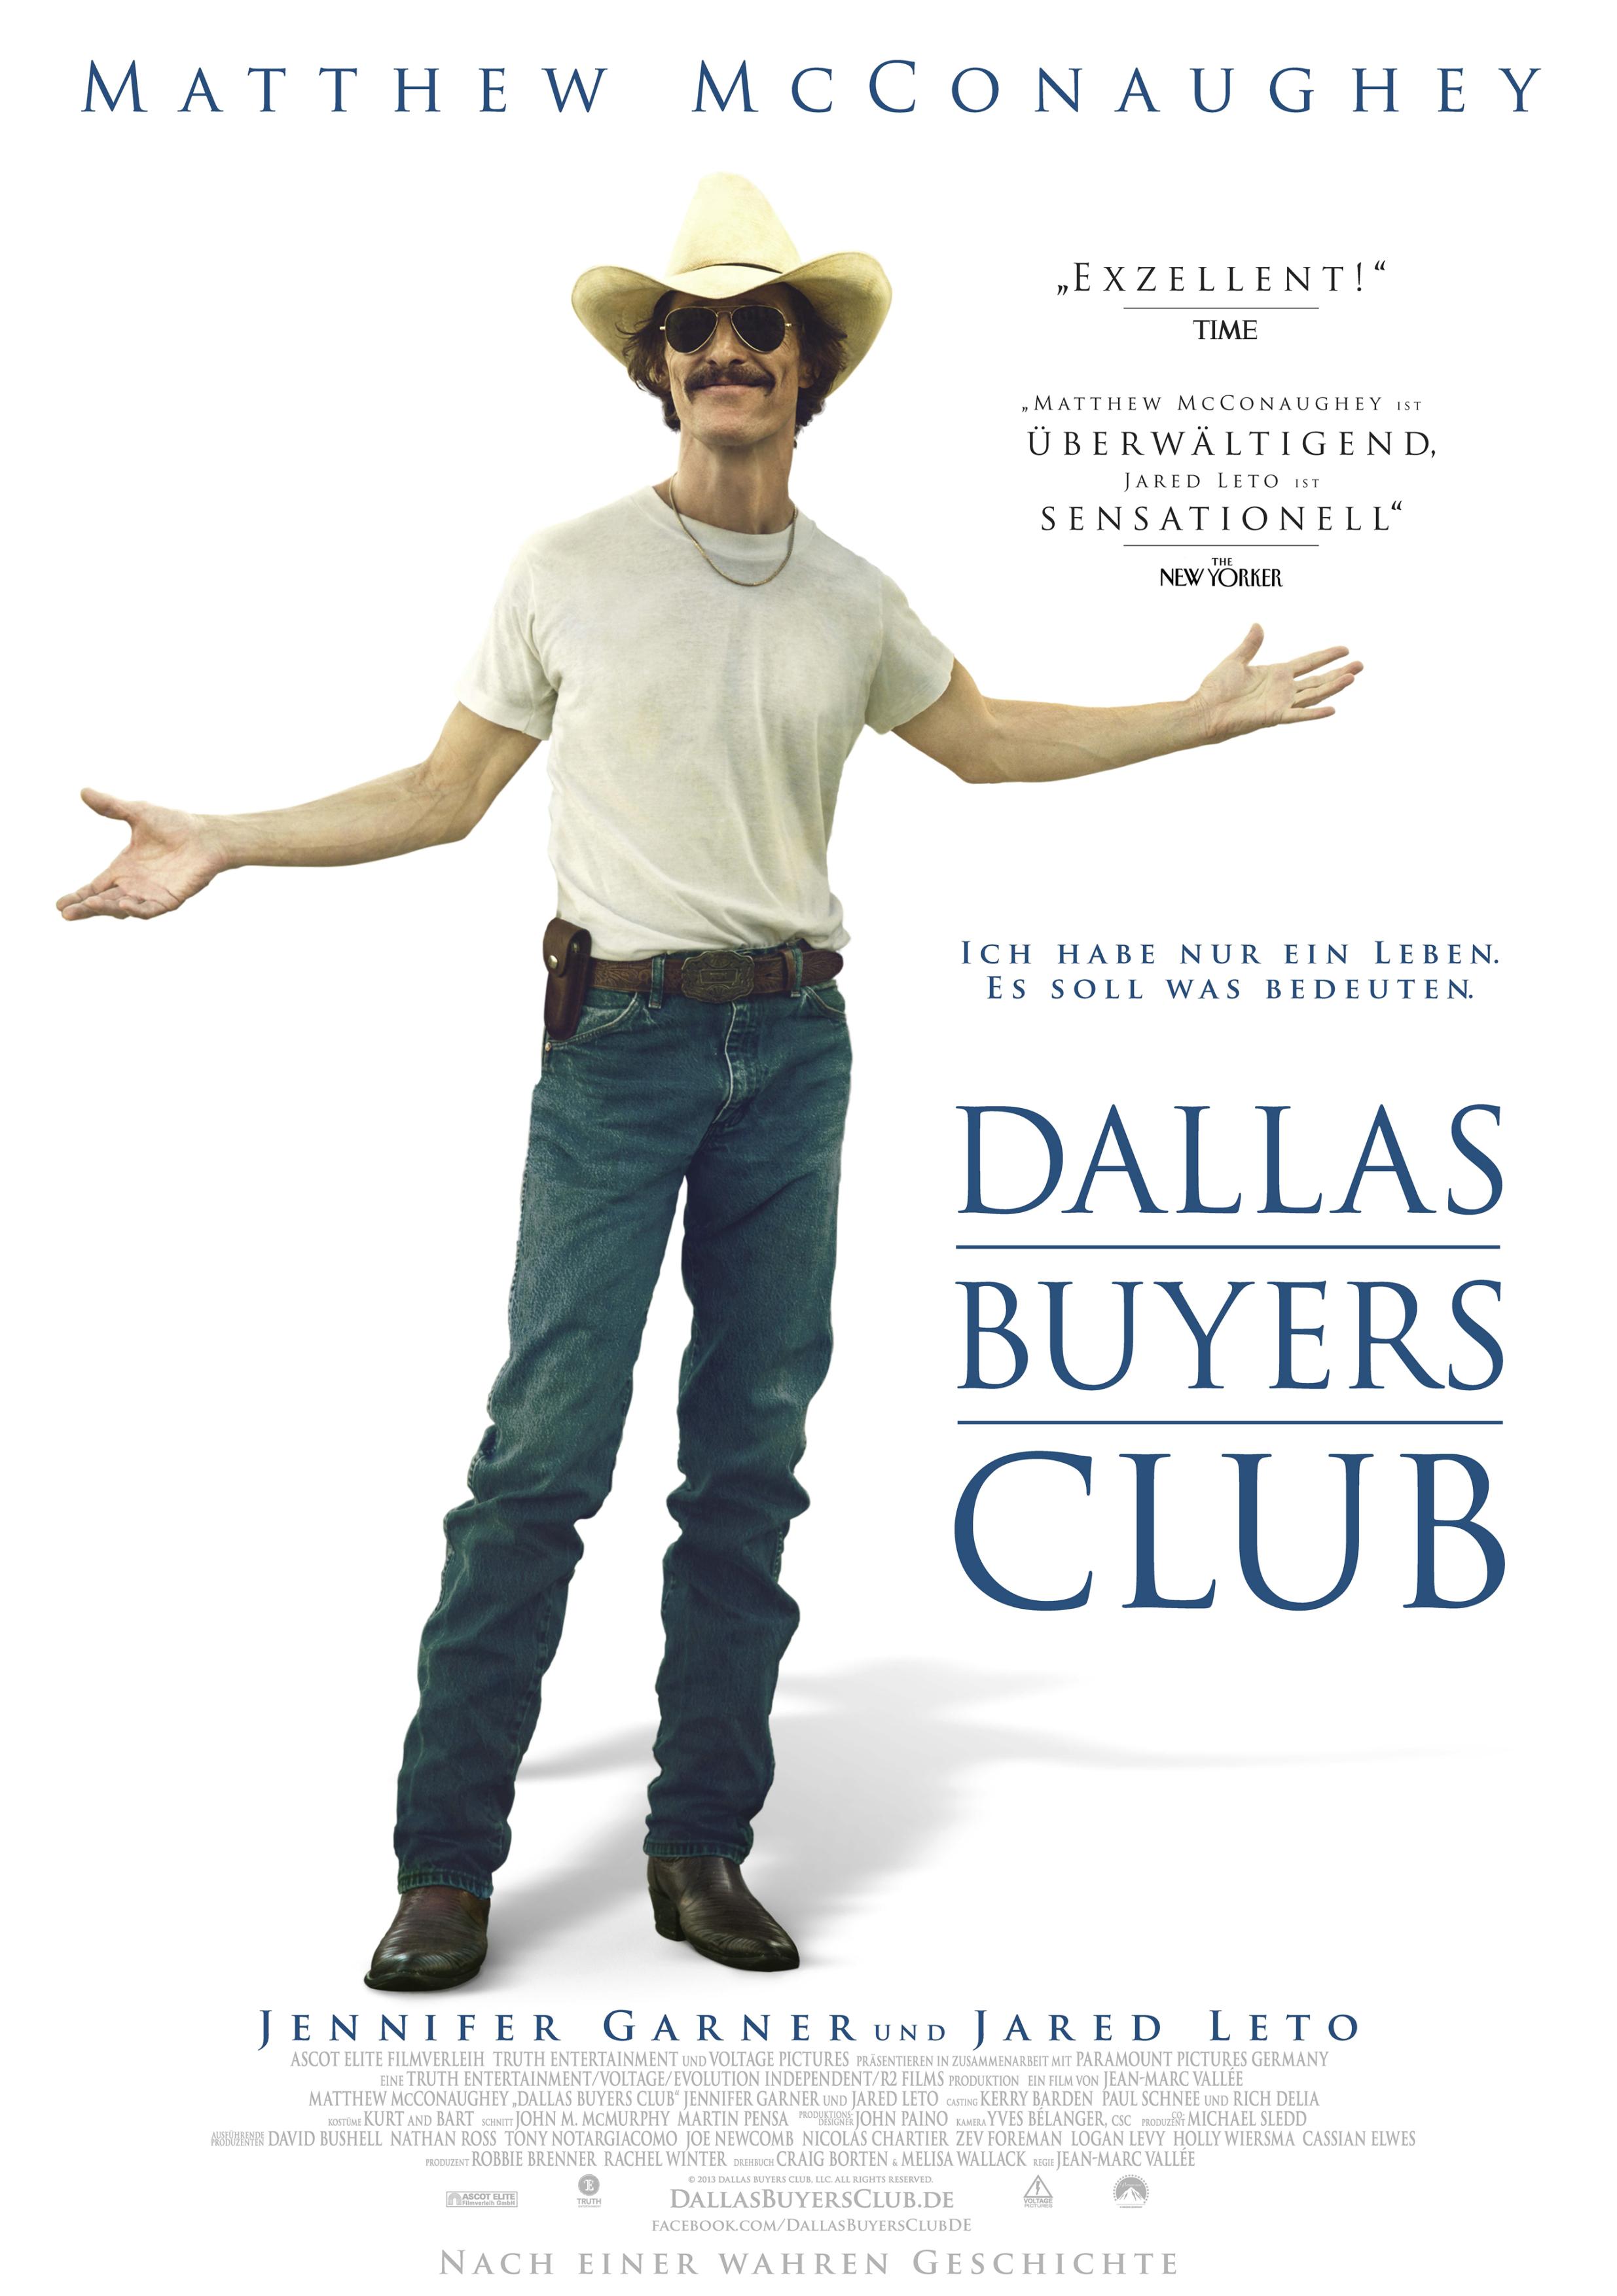 Постер фильма Далласский клуб покупателей | Dallas Buyers Club